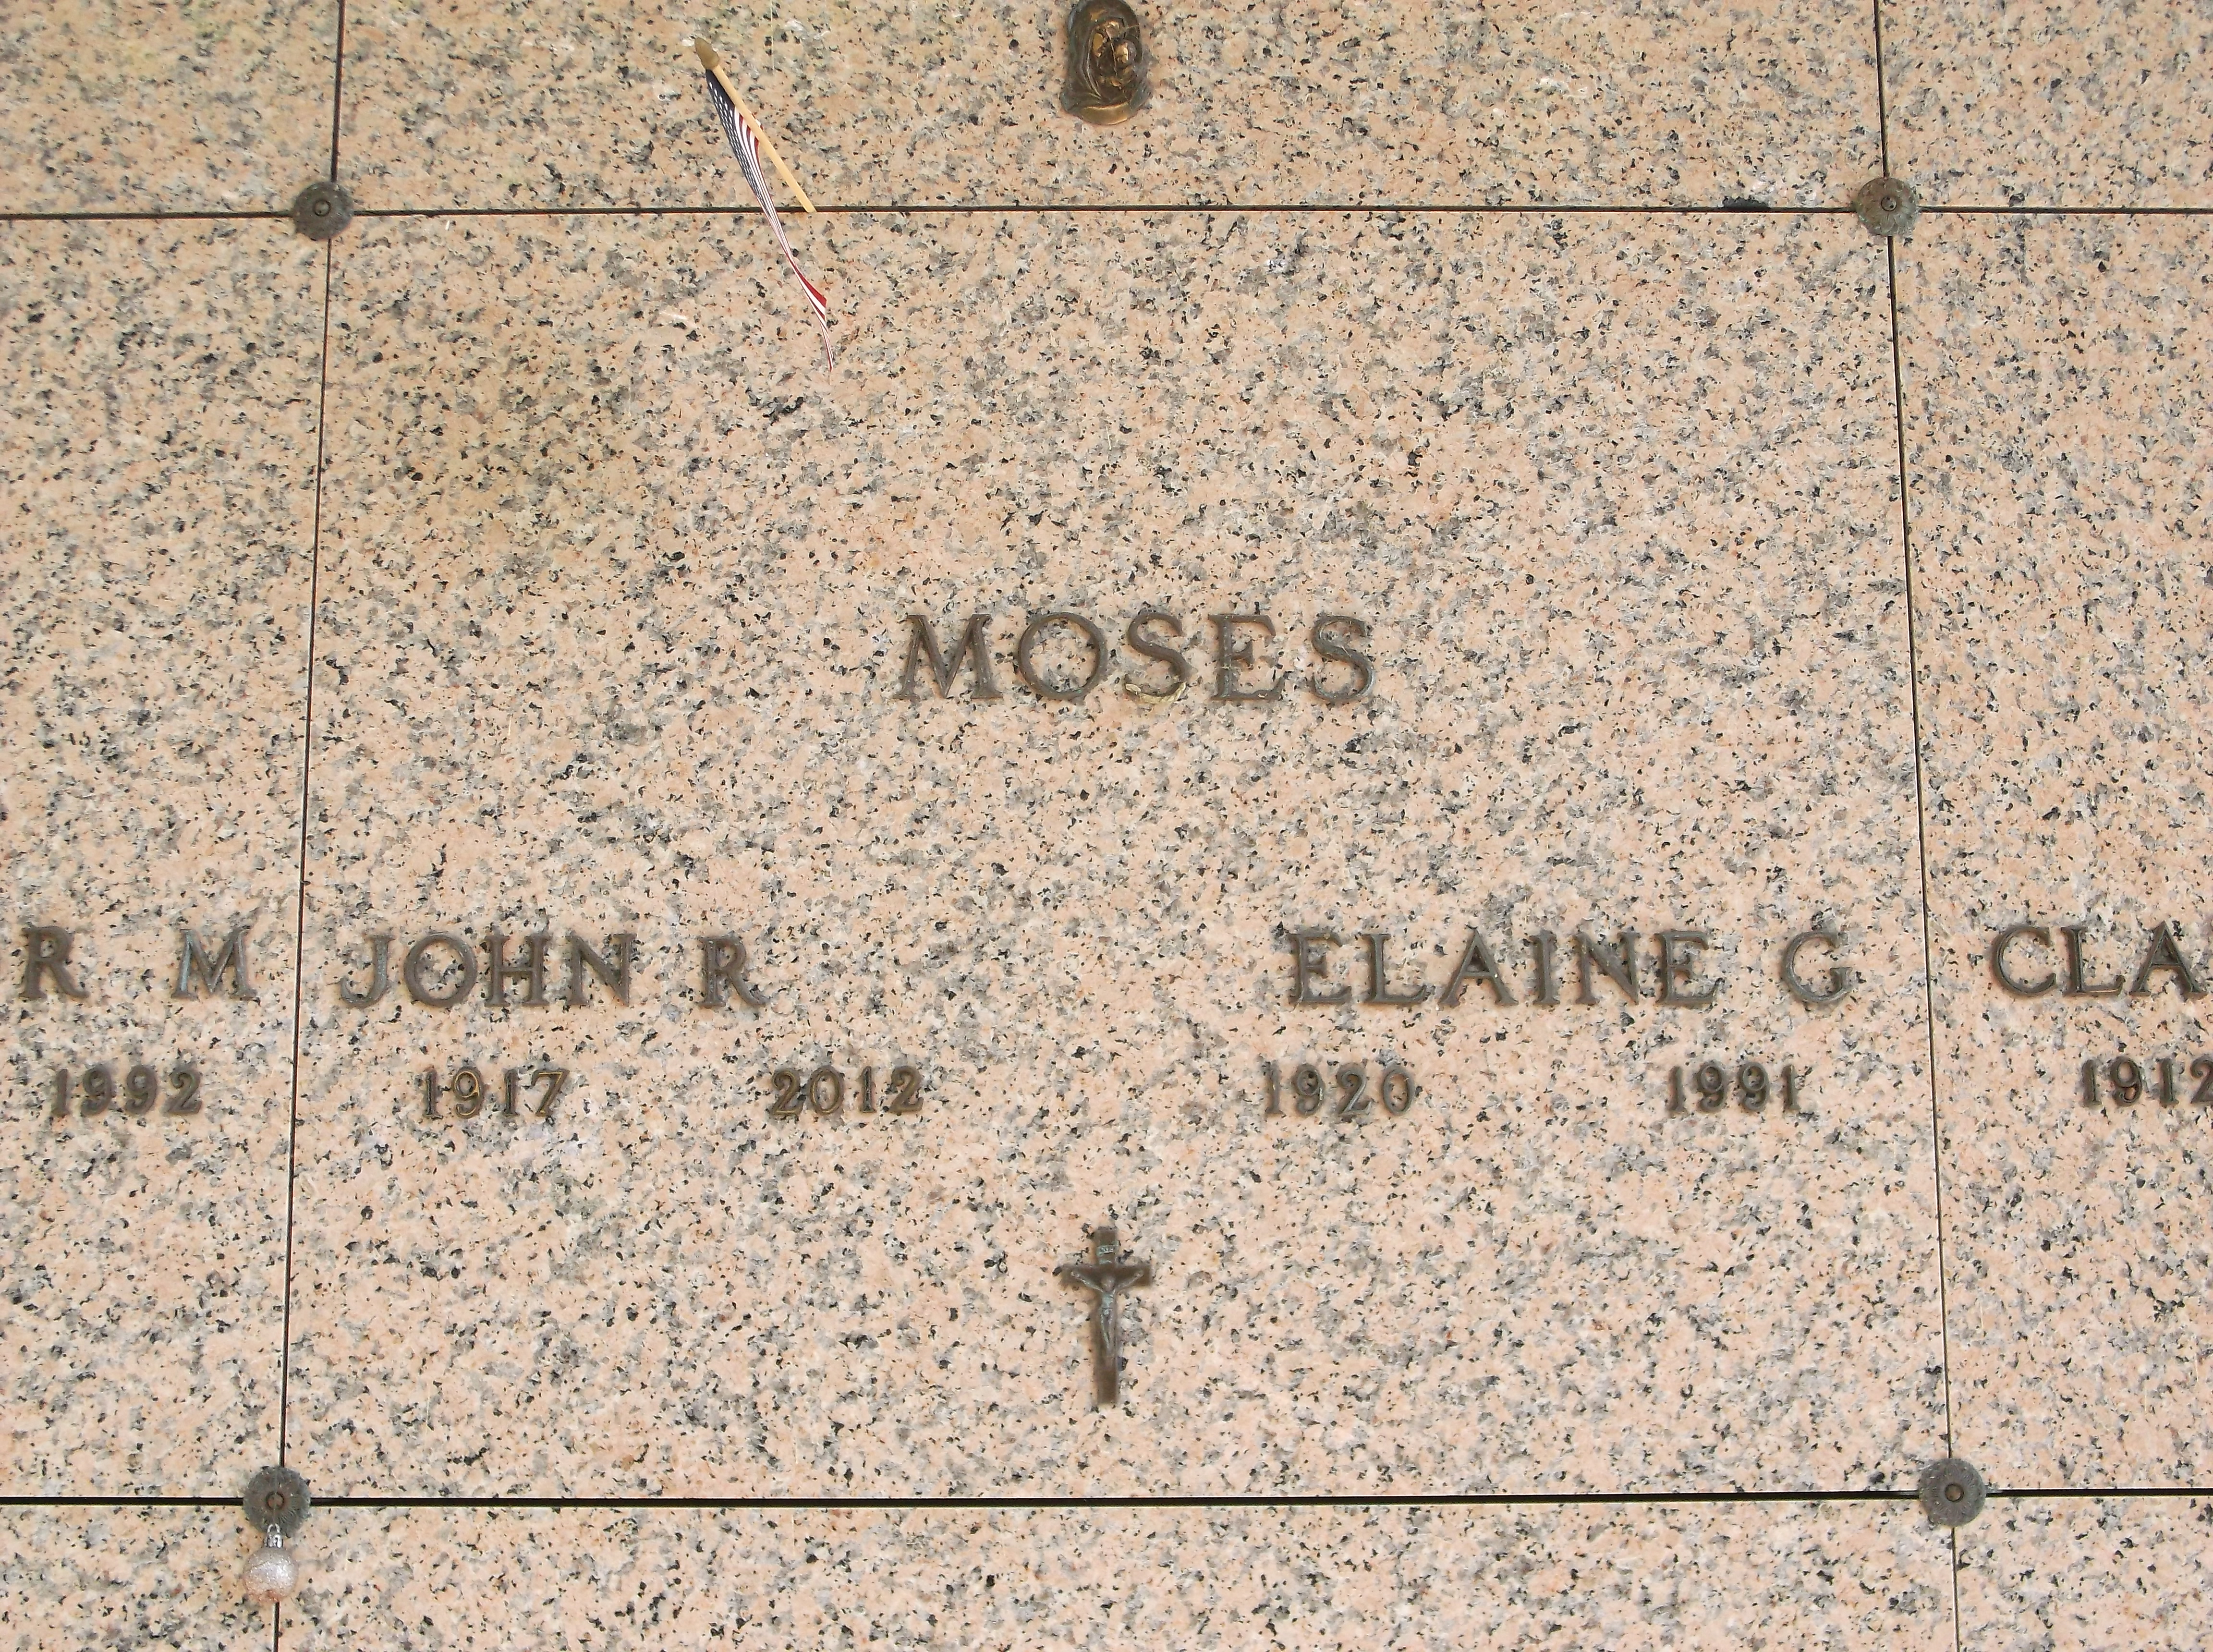 John R Moses